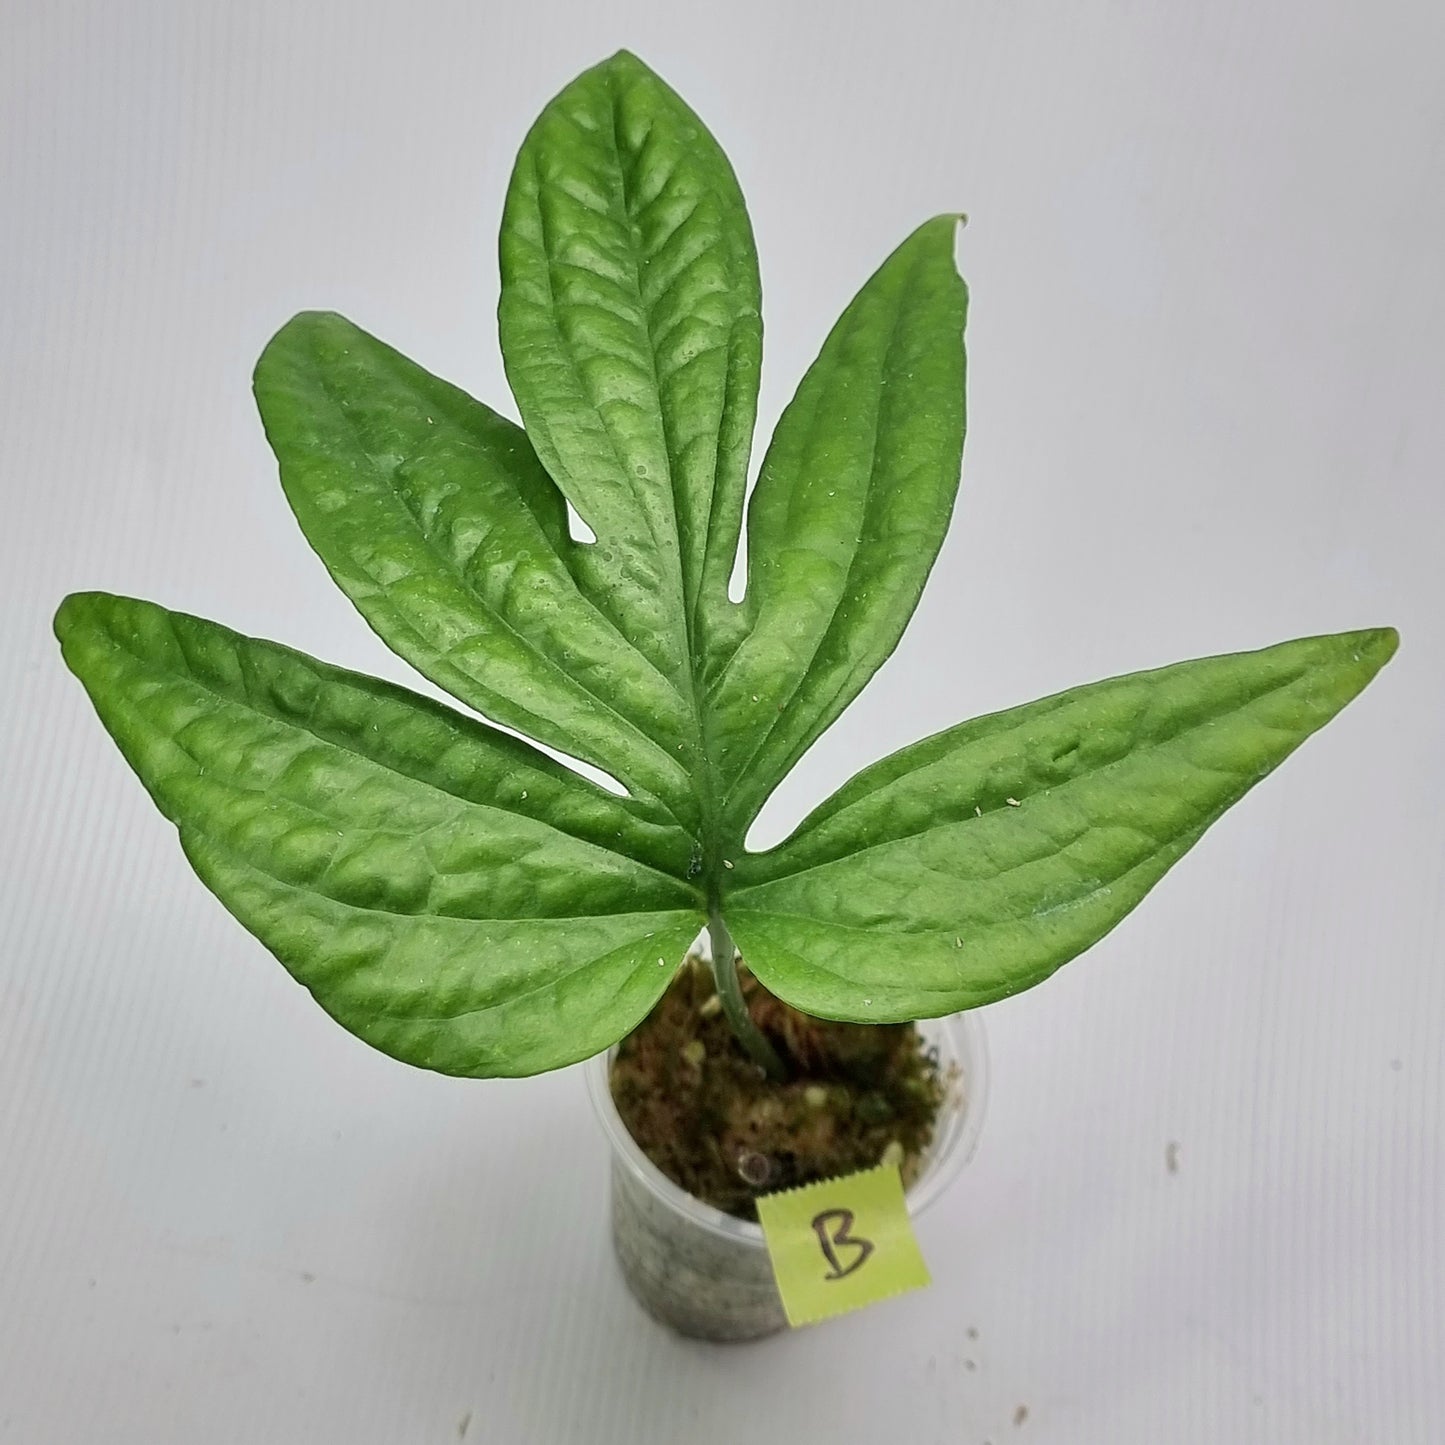 rare Amydrium zippelianum for sale in Perth Australia